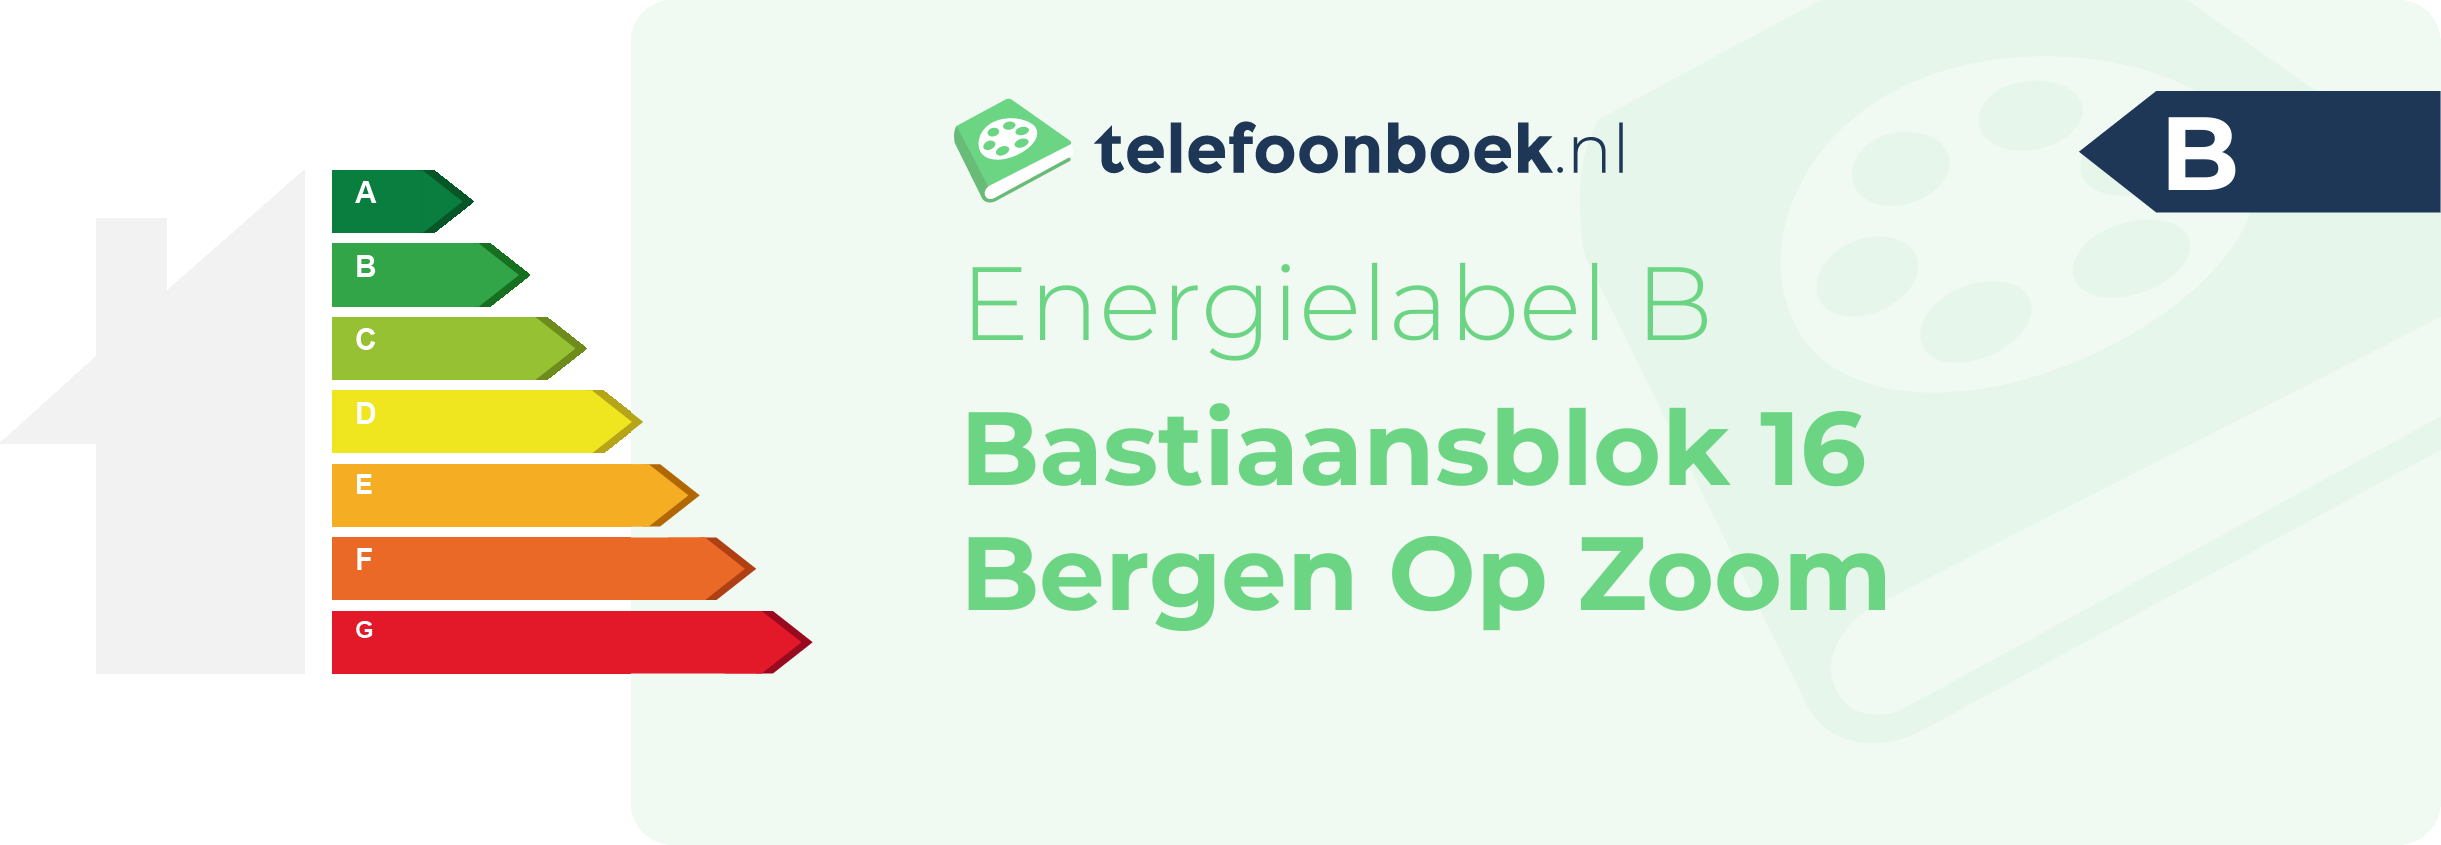 Energielabel Bastiaansblok 16 Bergen Op Zoom